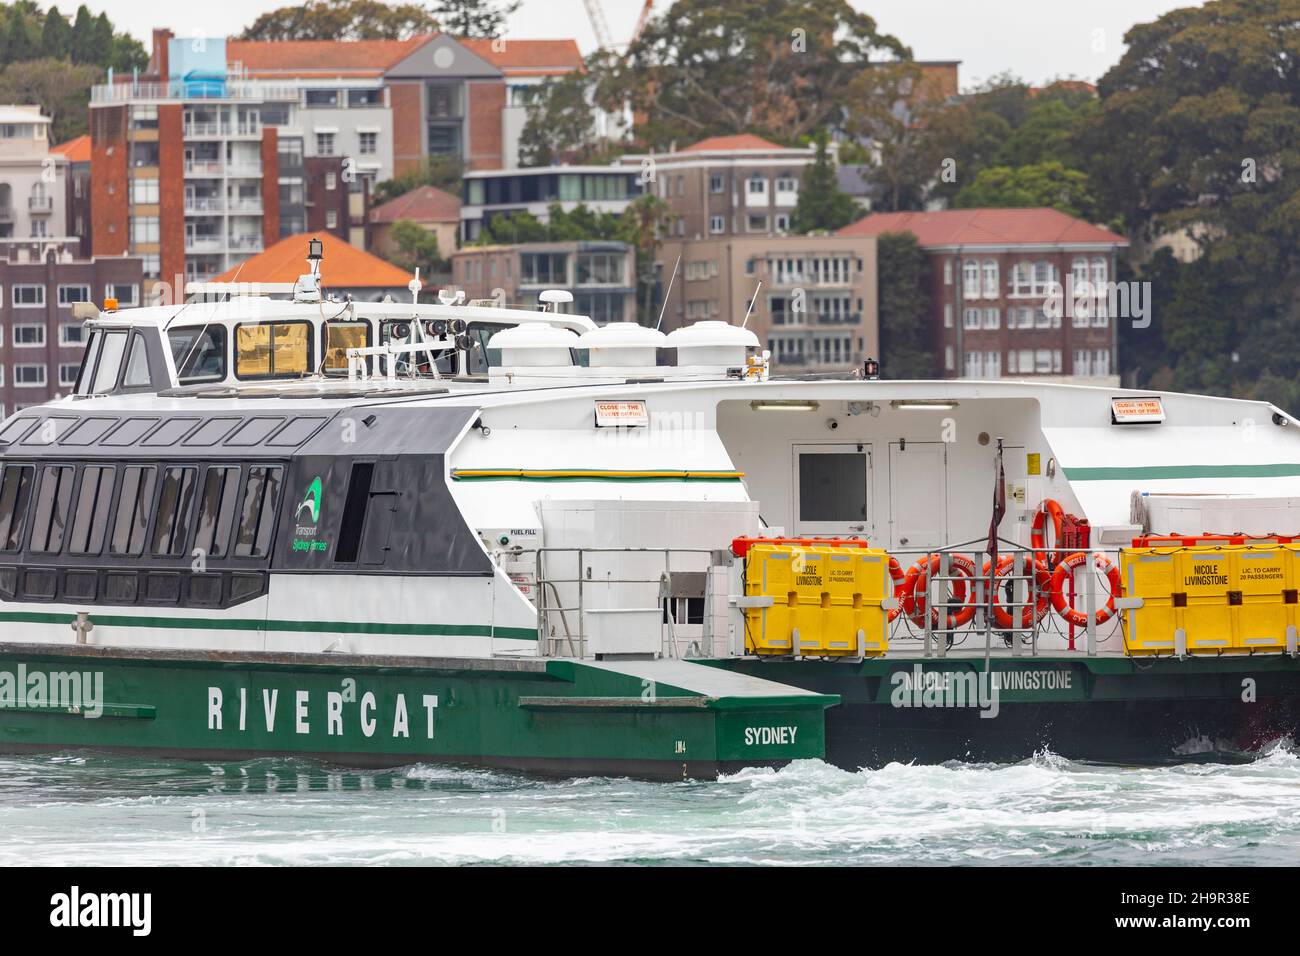 MV Nicole Livingstone Rivercat classe Sydney ferry, l'un des sept bateaux de classe Rivercat tous nommés d'après les célèbres athlètes australiens, Sydney Harbour Banque D'Images